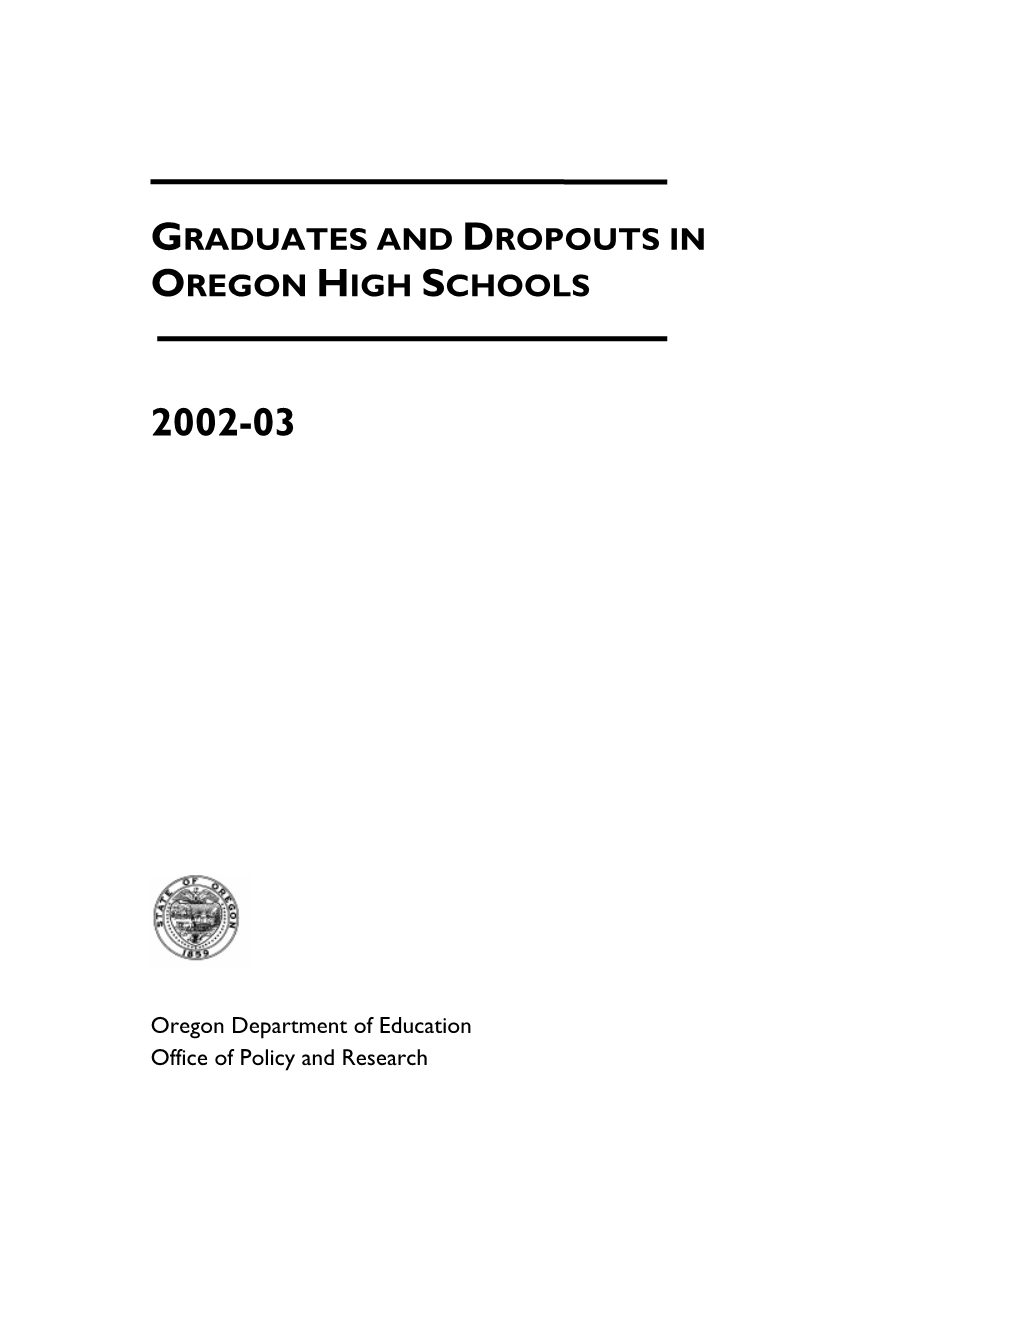 Graduates and Dropouts in Oregon High Schools 2002-03